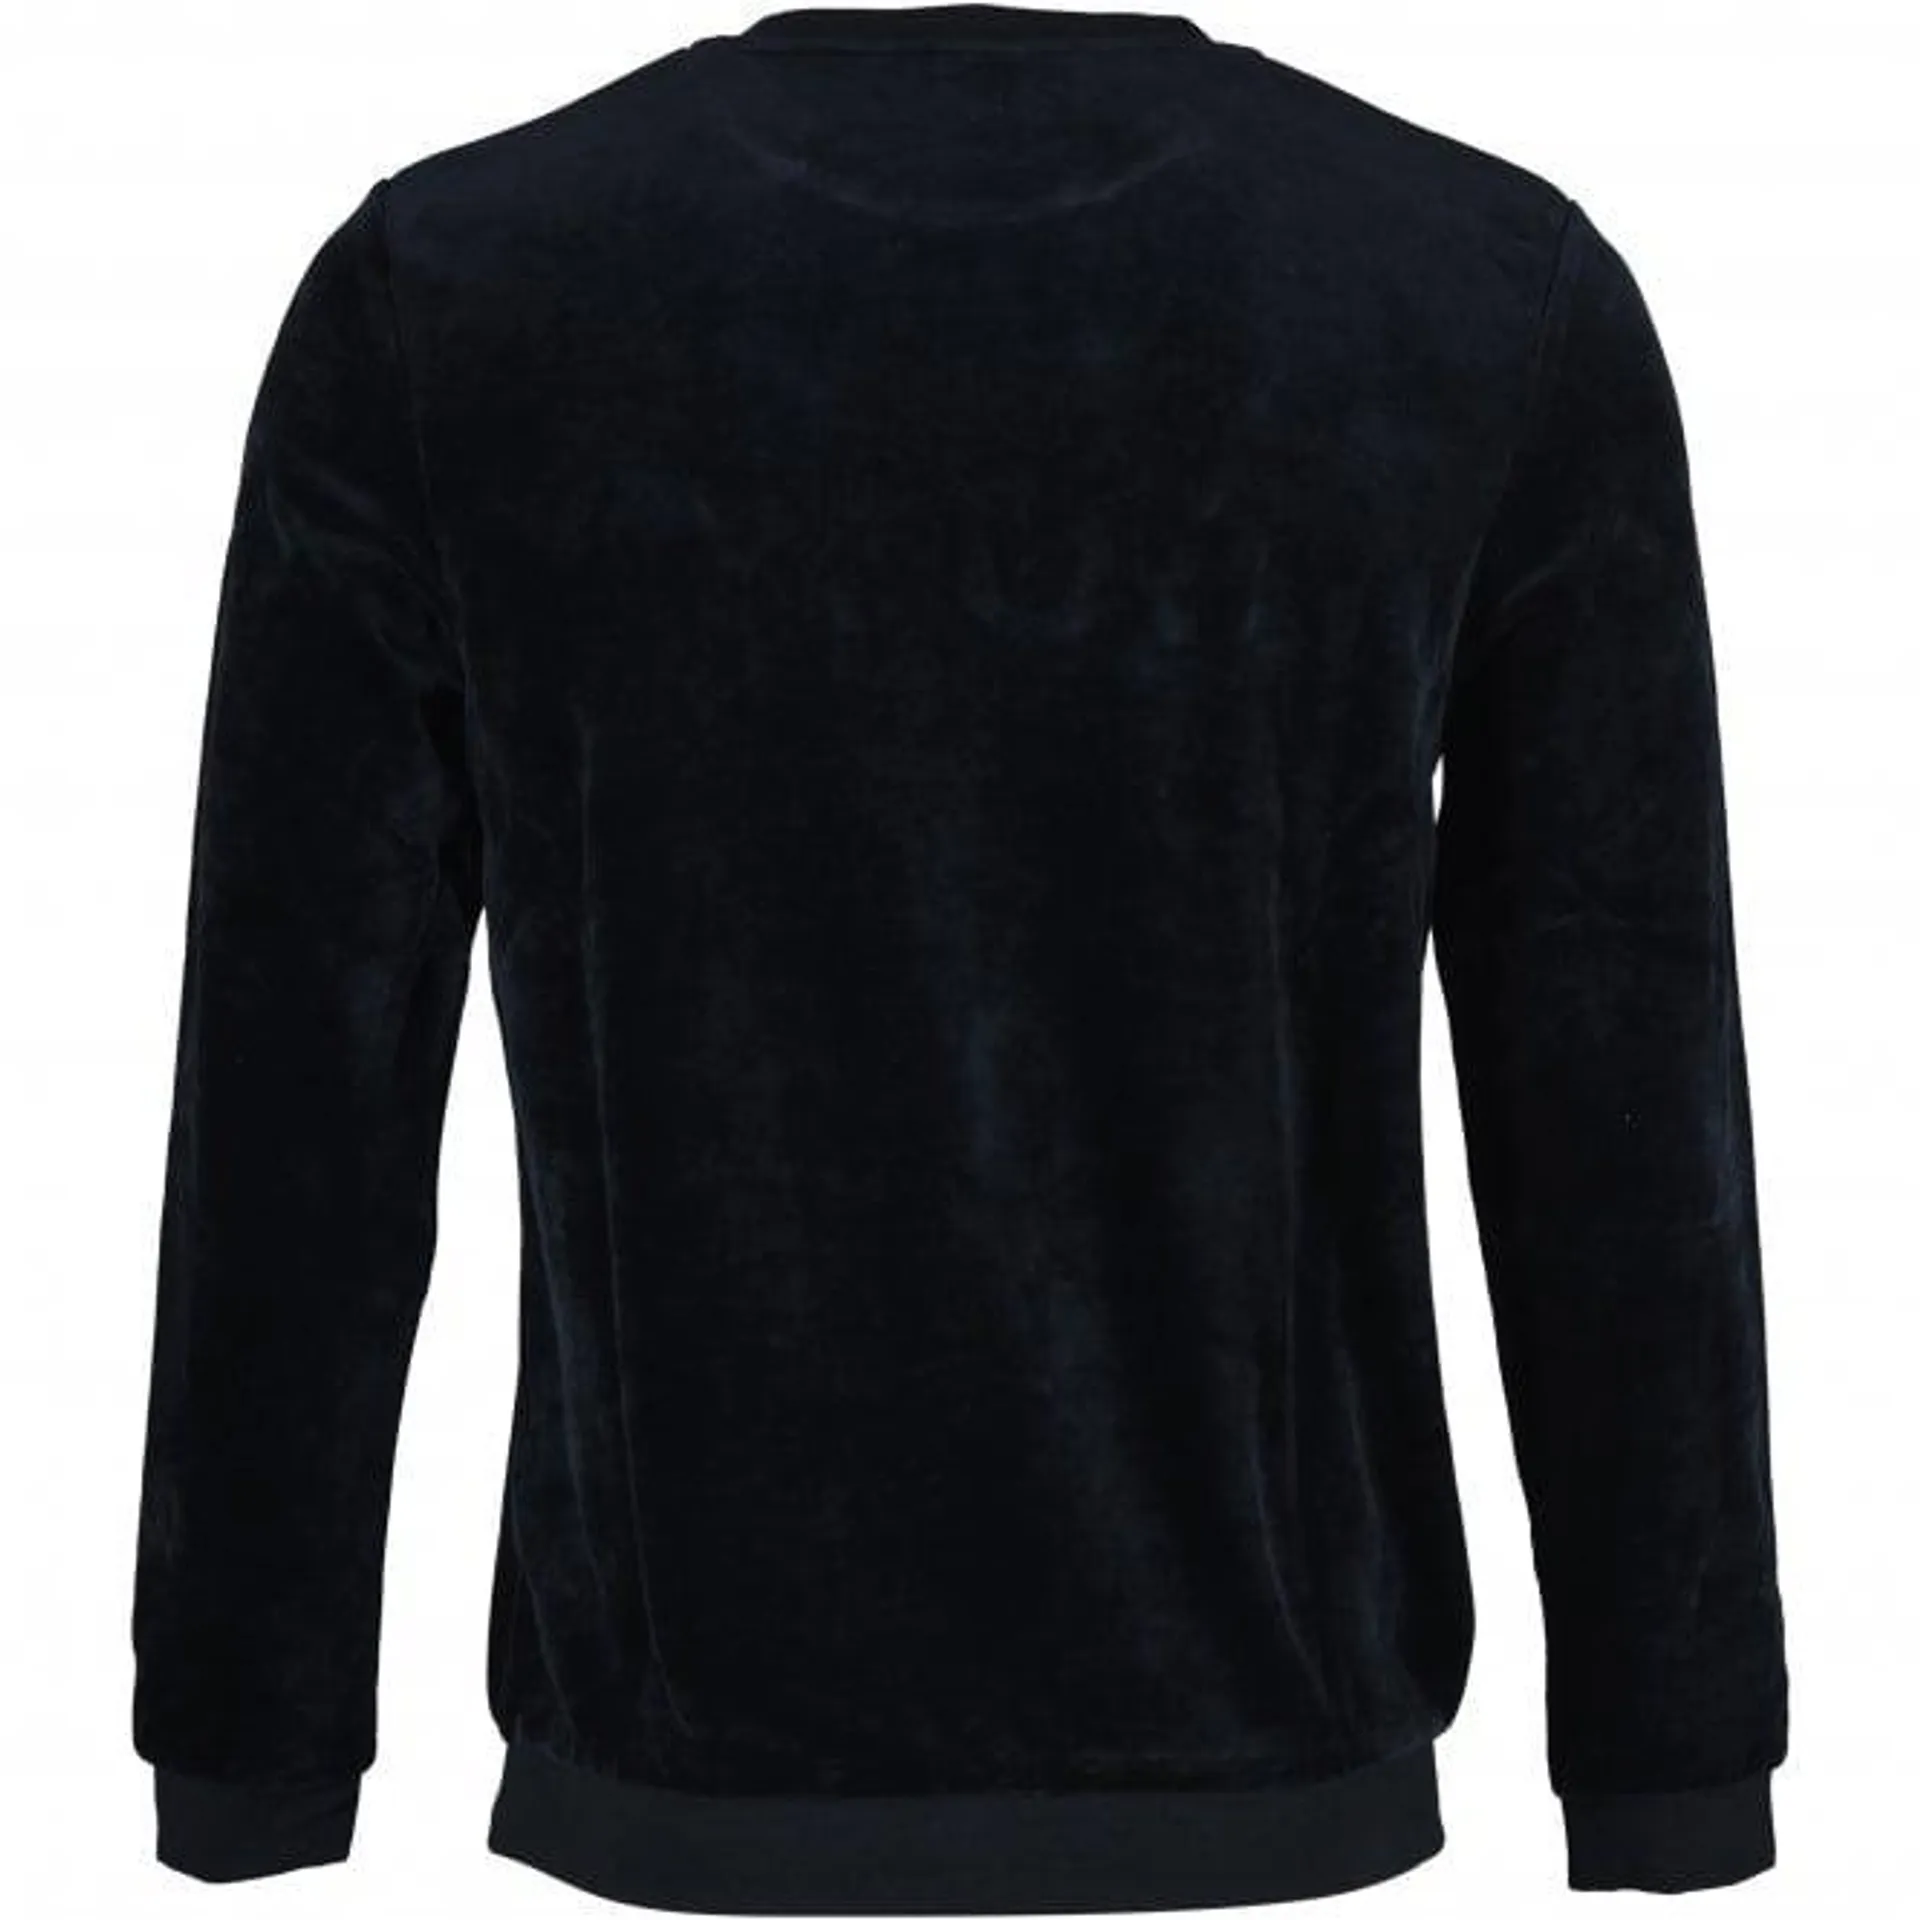 Luxe Velour Loungewear Sweatshirt, Black/gold